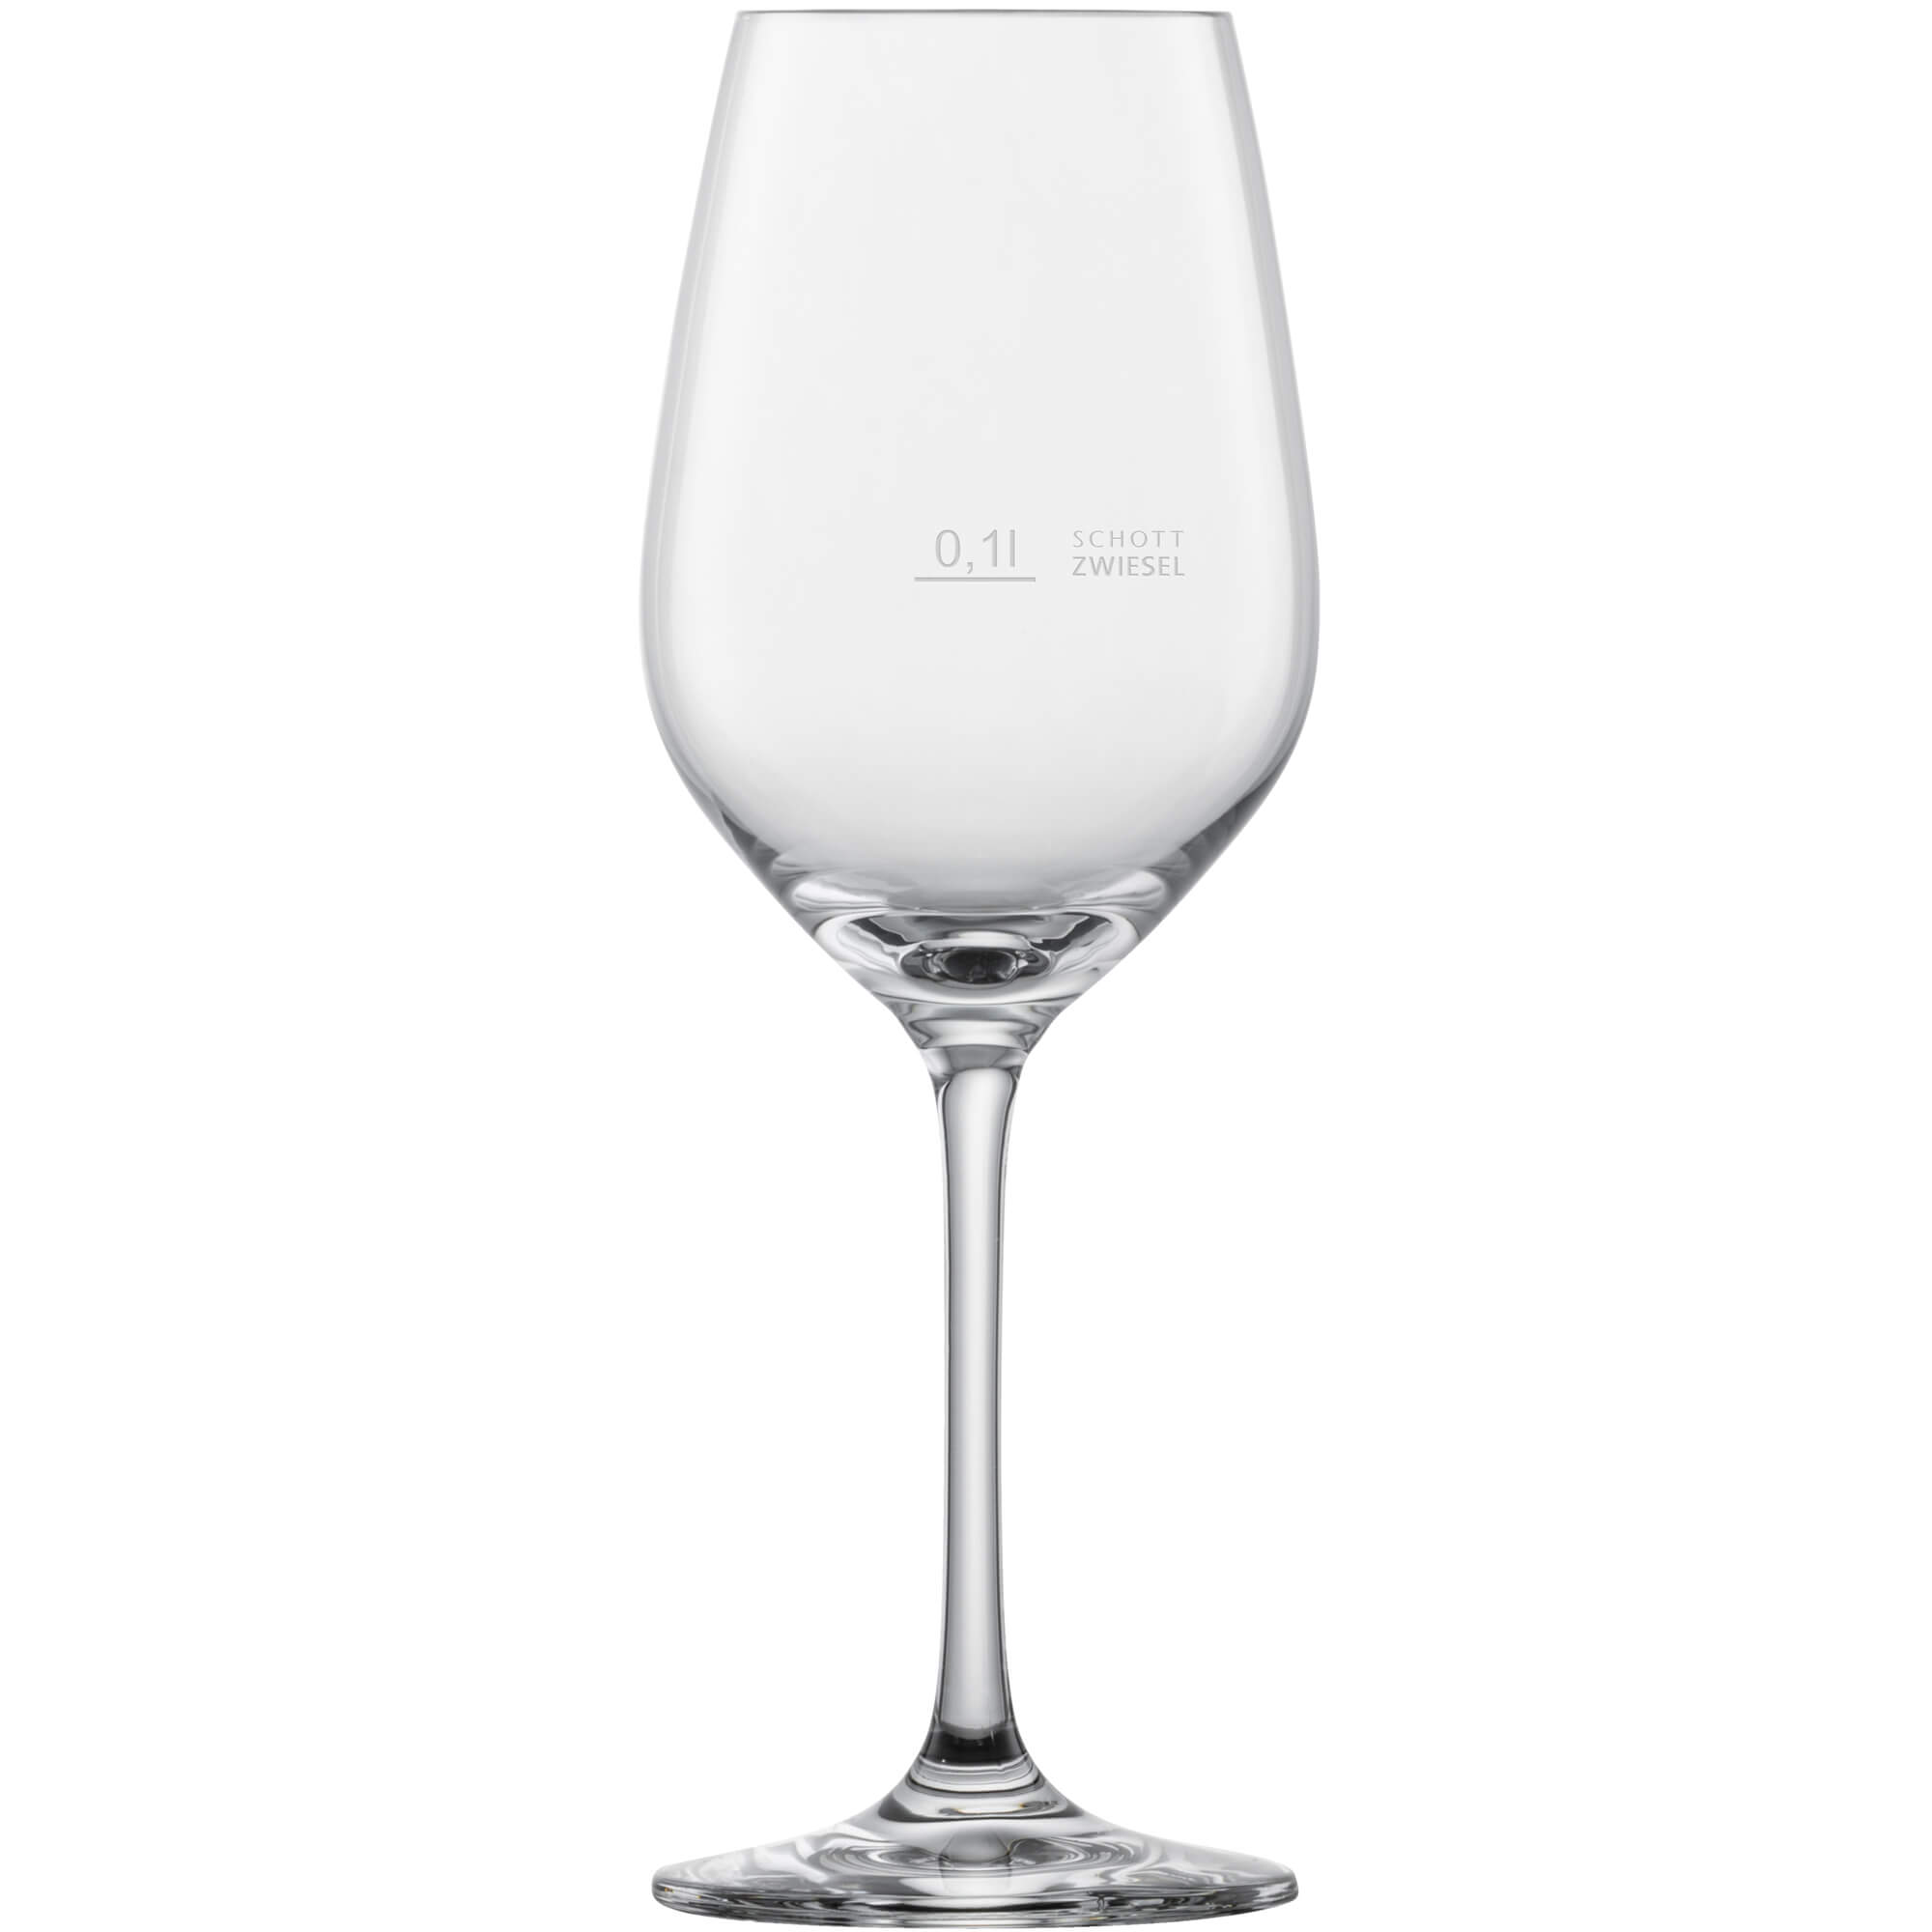 Weißweinglas Vina, Zwiesel - 290ml, 0,1l Eiche (6 Stk.)